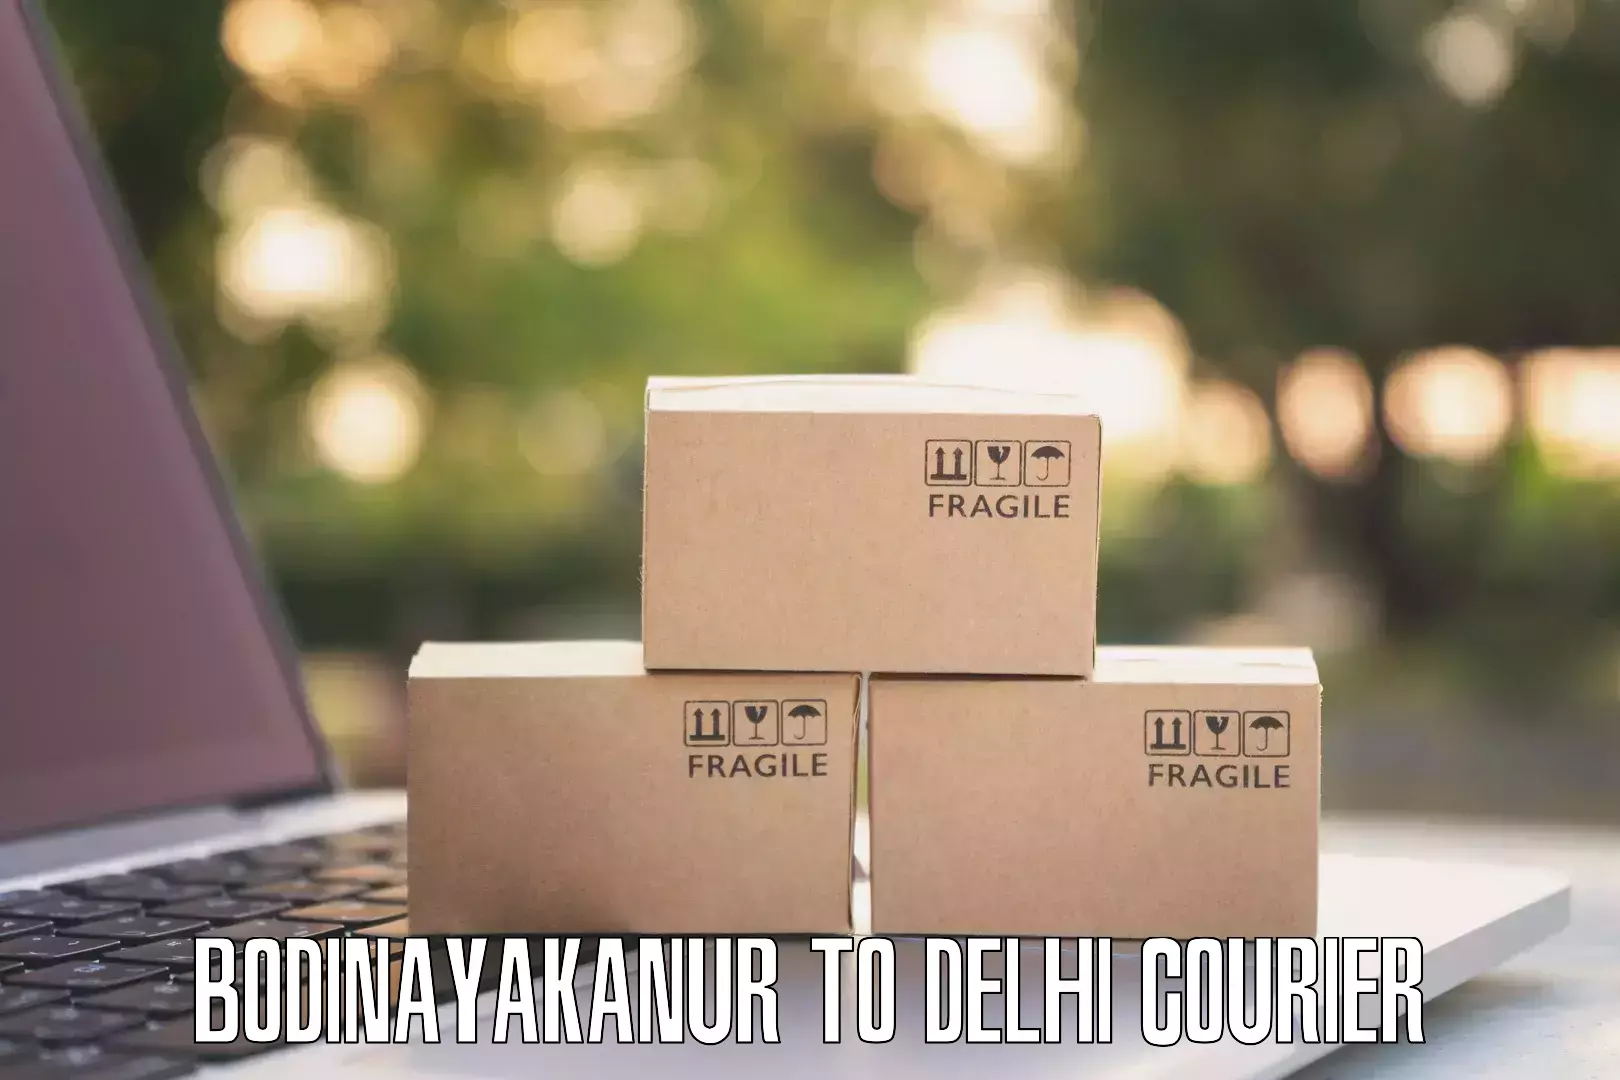 Local courier options Bodinayakanur to Jawaharlal Nehru University New Delhi